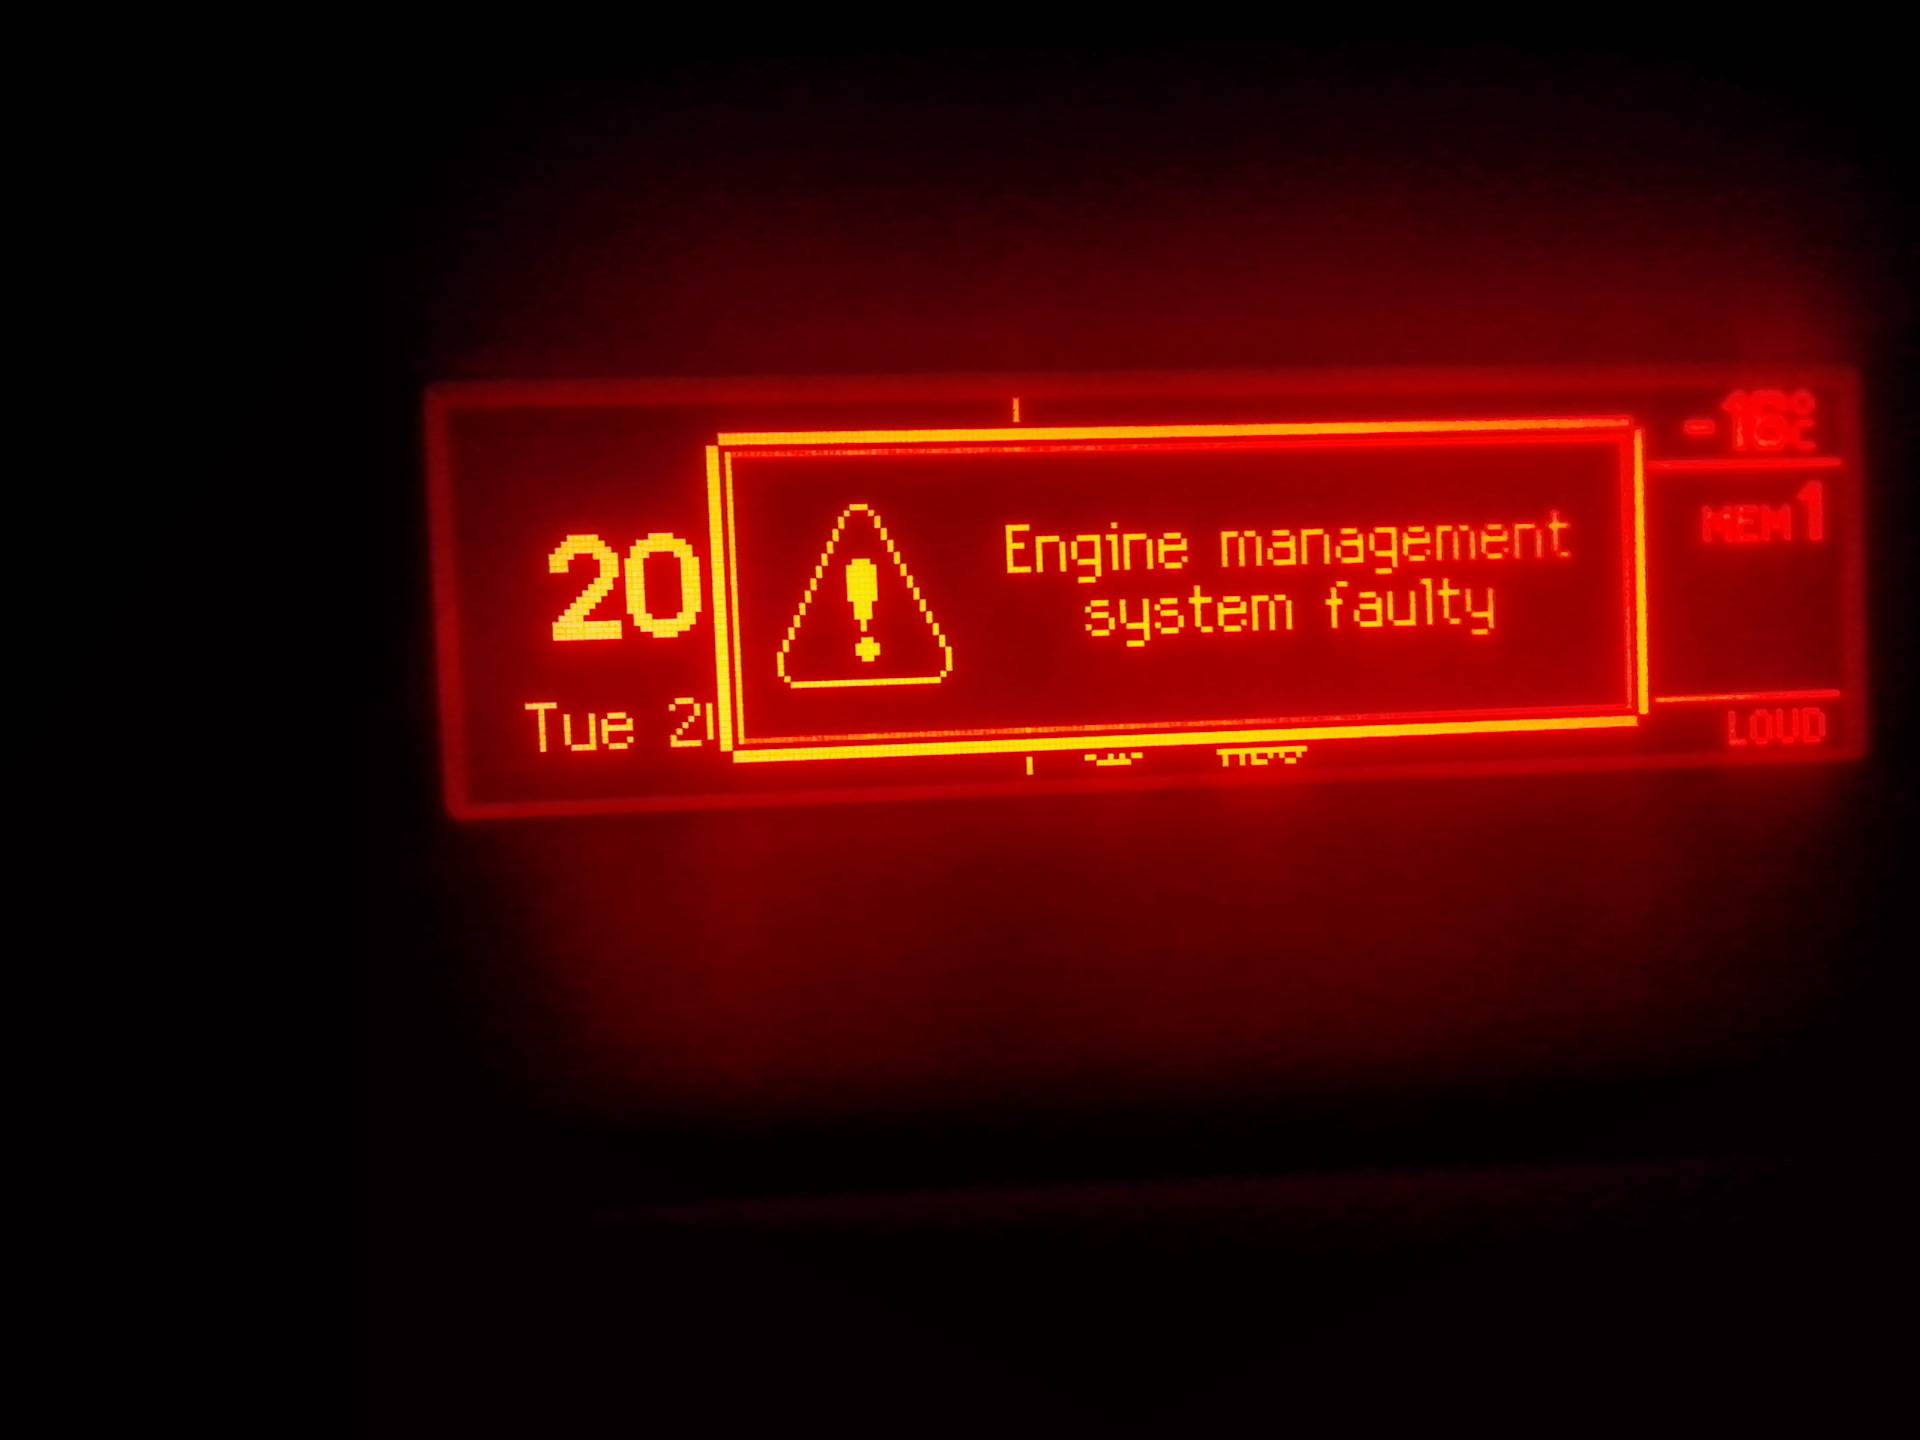 Engine management system faulty ошибка на peugeot (пежо) 308, что делать? — автомобильный портал